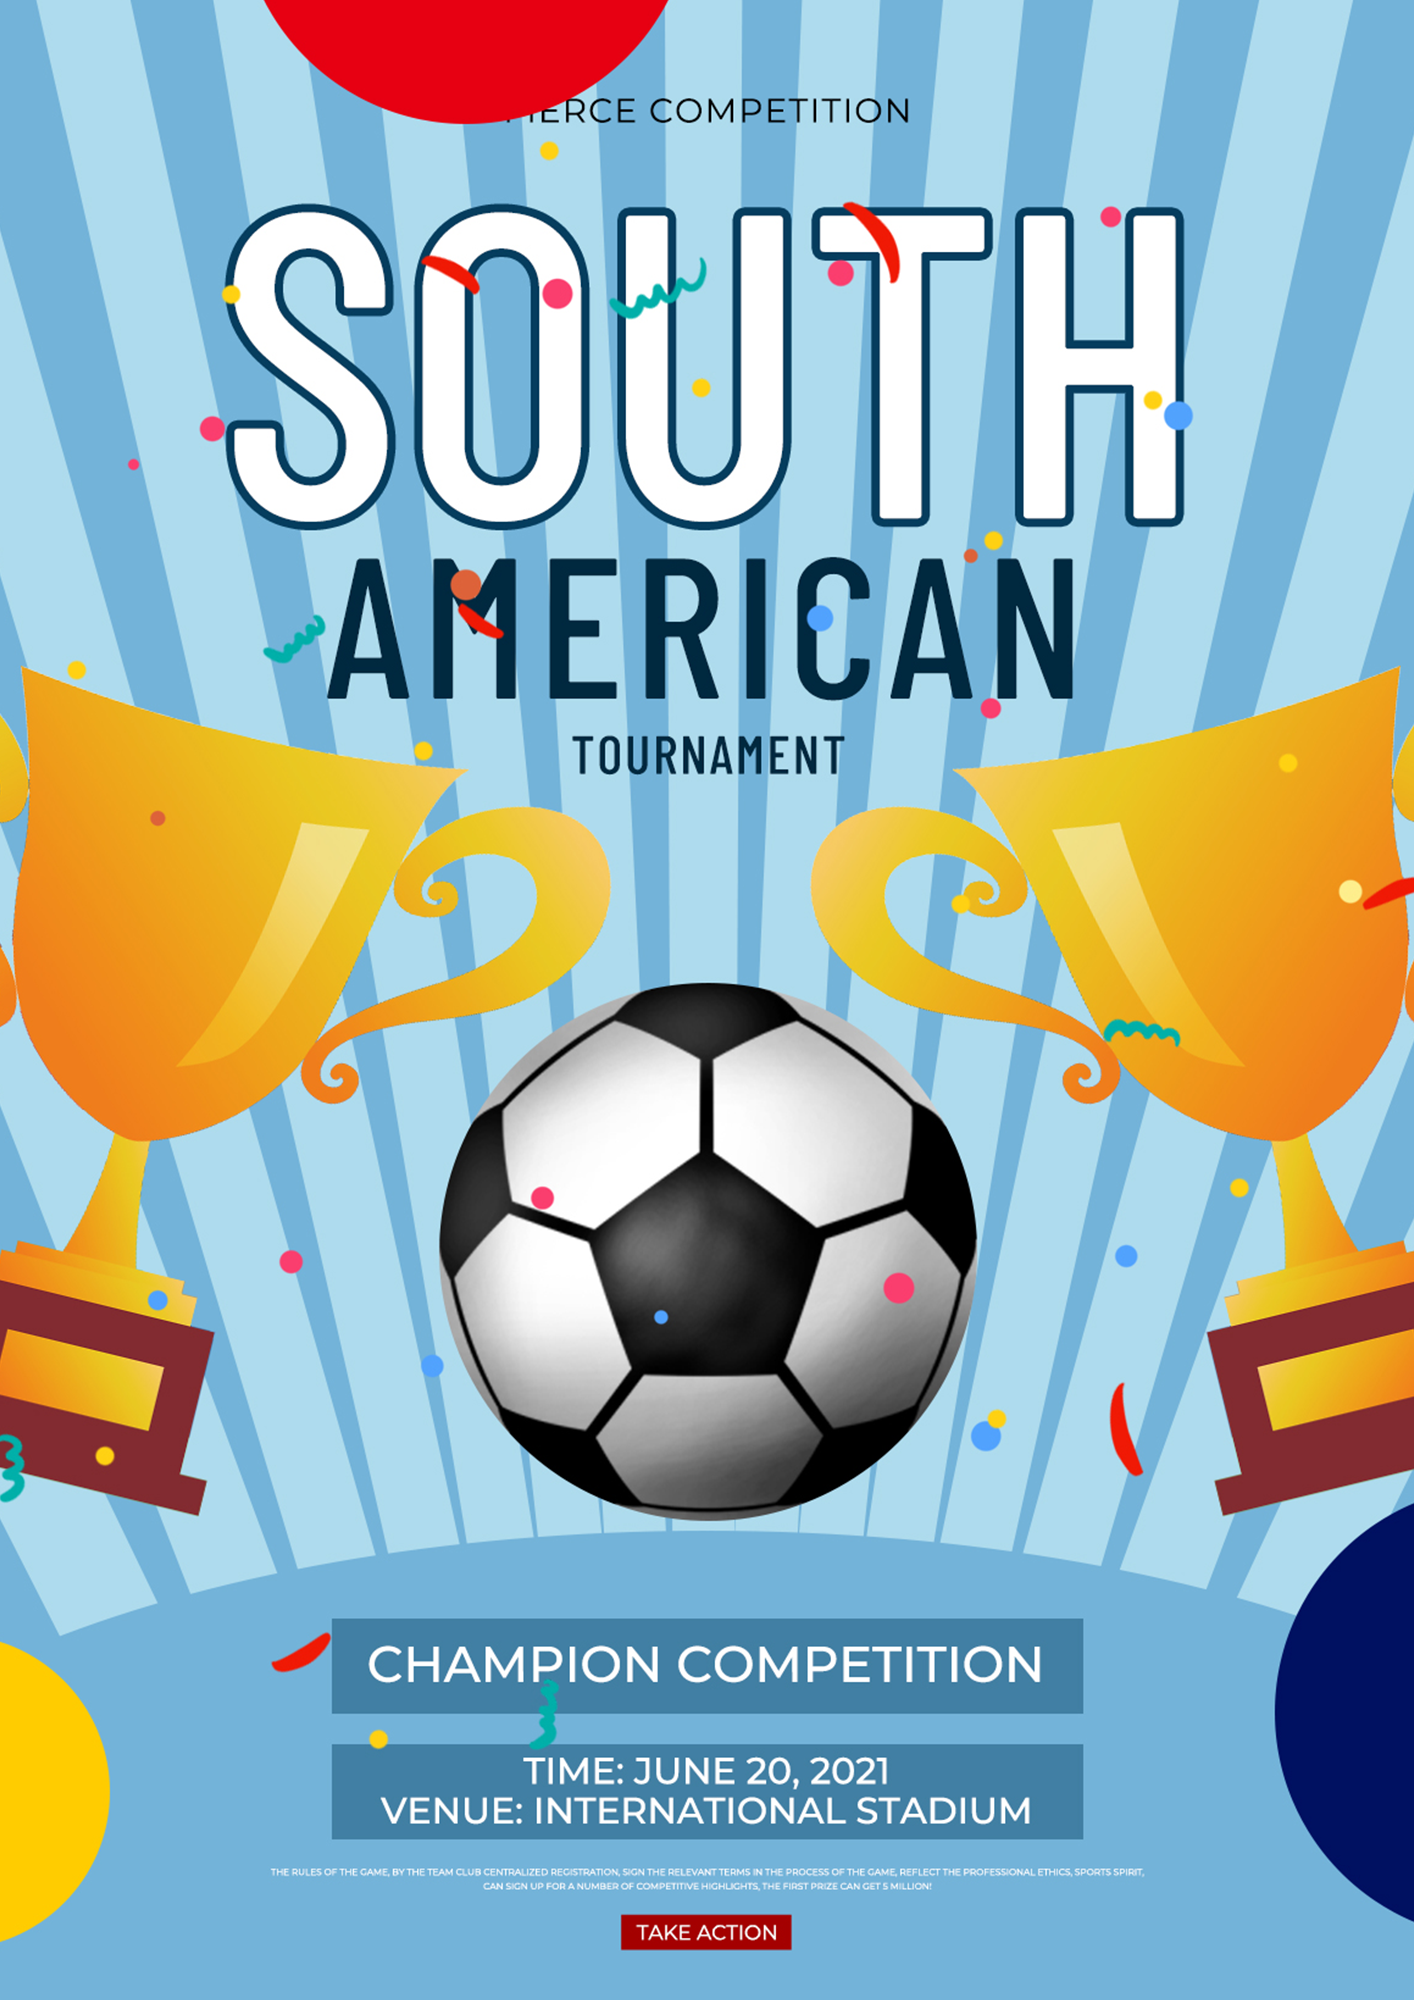 创意简约风格南美足球赛宣传模板图片